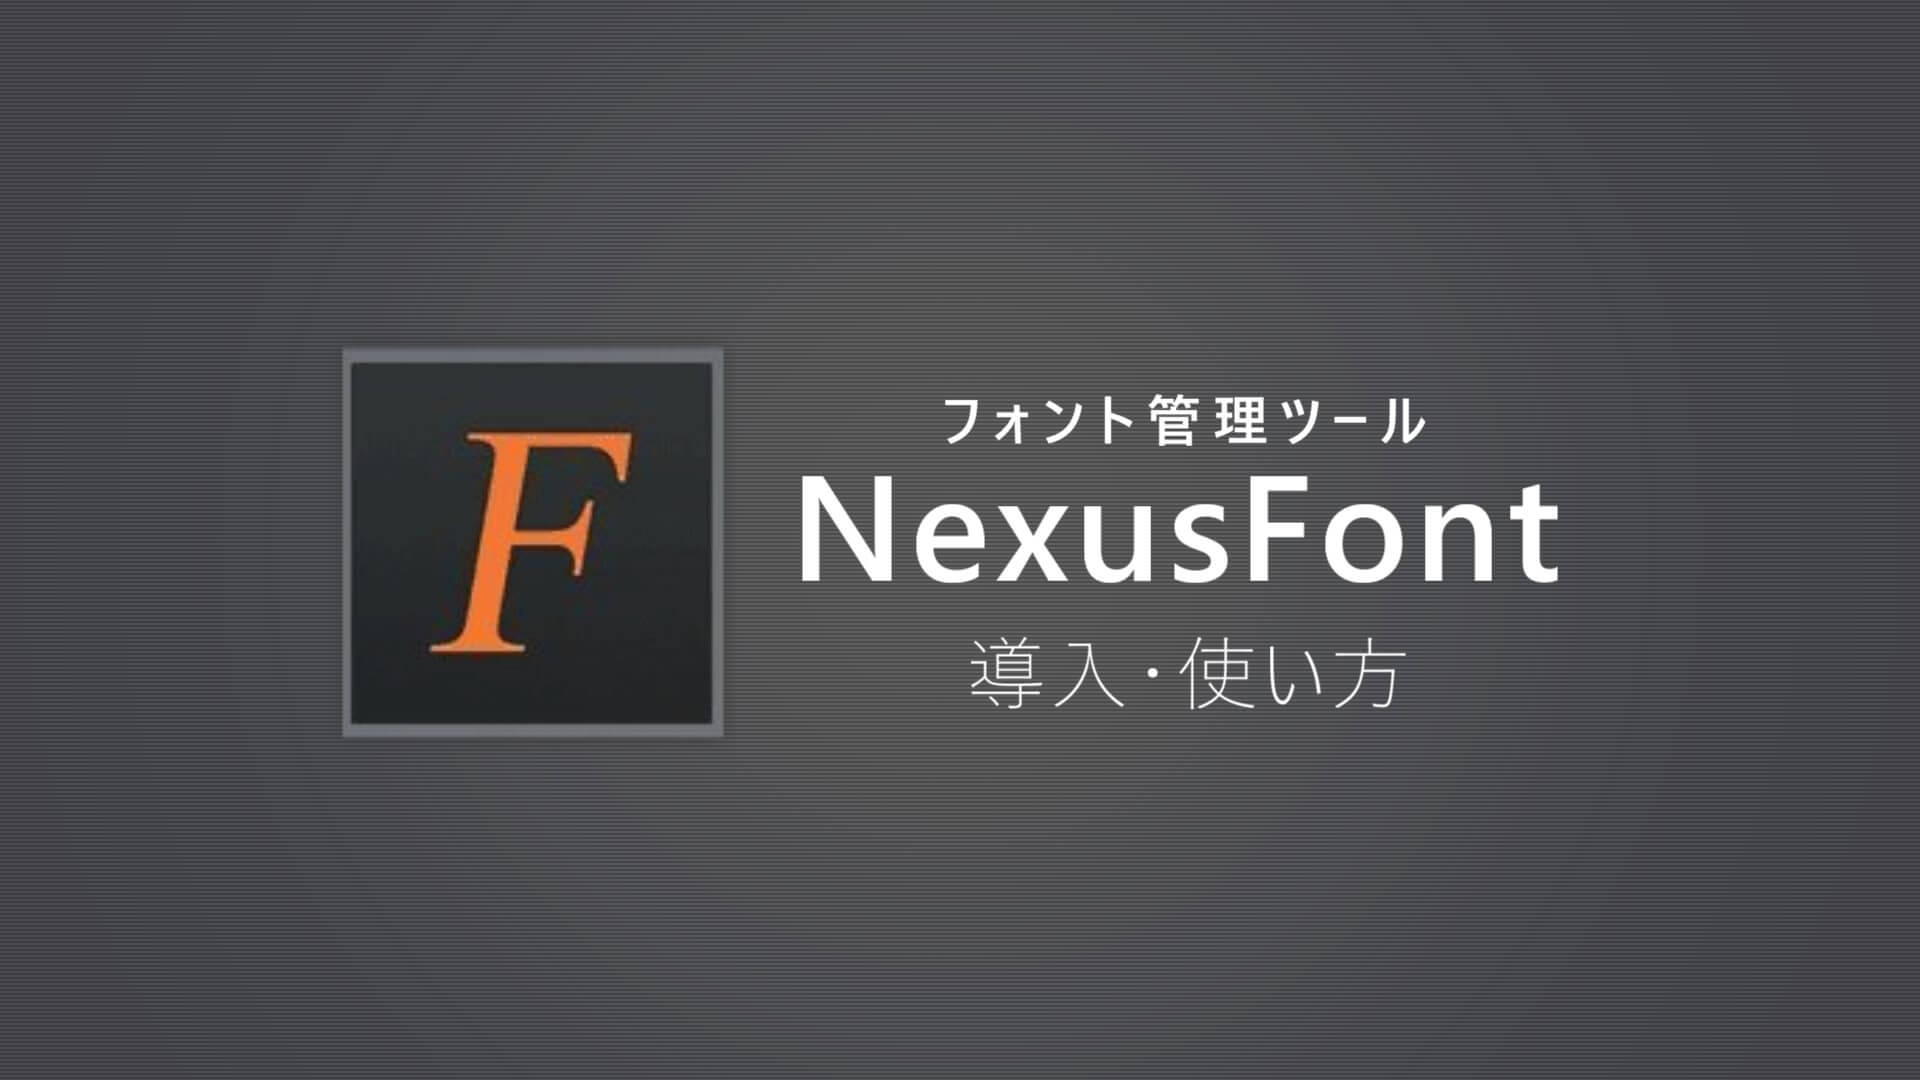 NexusFont